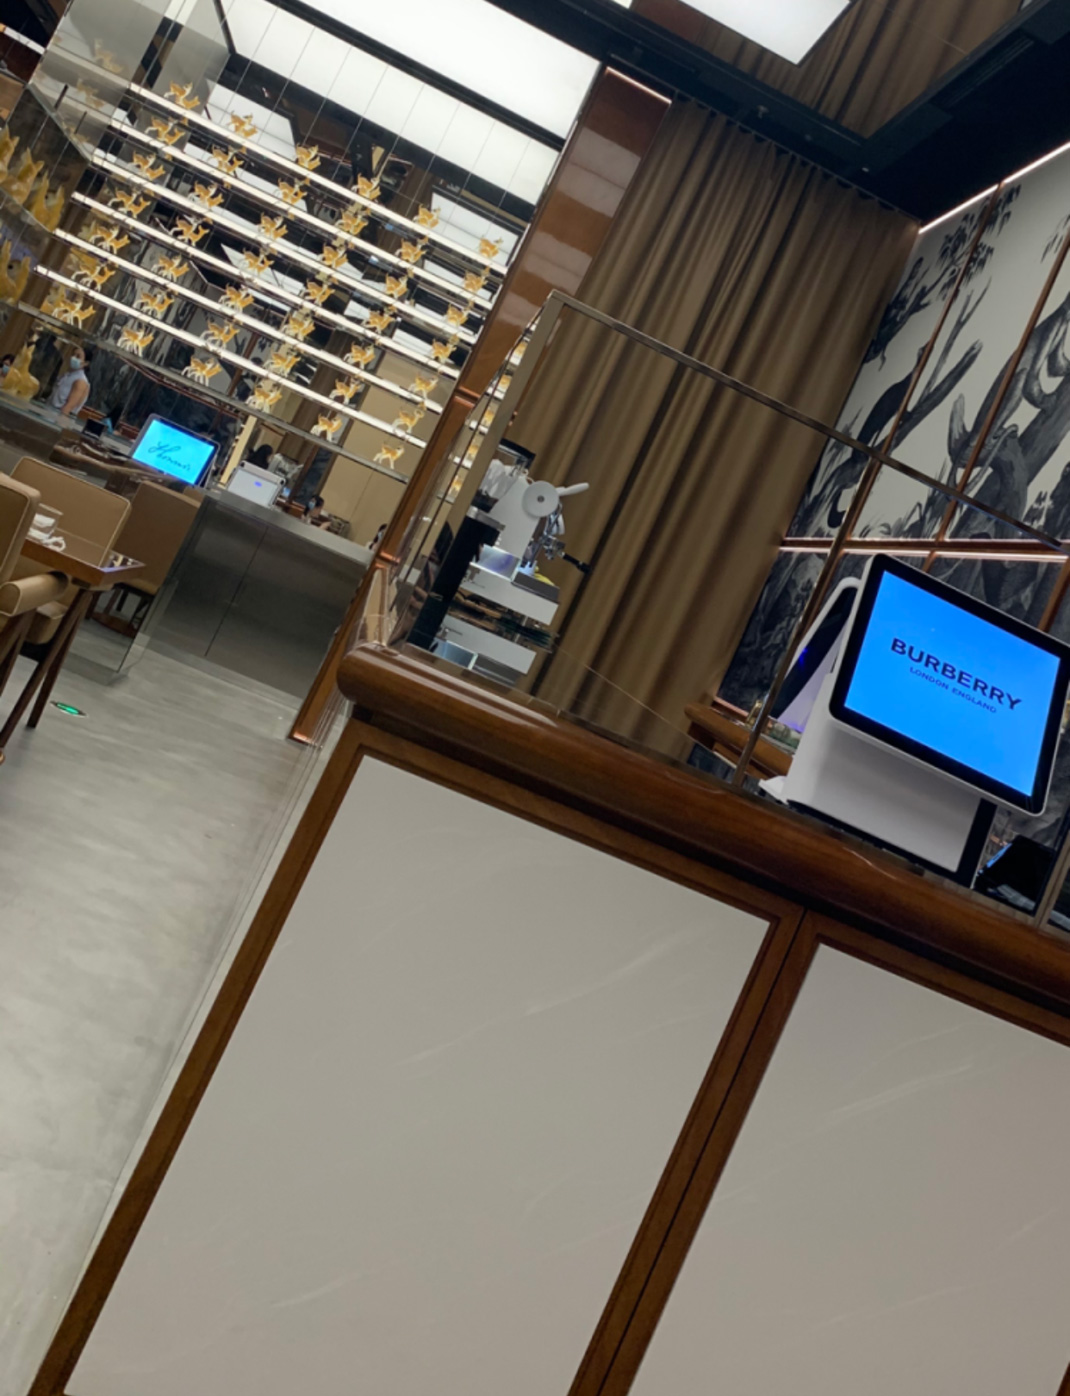 全亚洲首家Burberry咖啡厅 深圳湾万象城 深圳Burberry cafe 万象城 社交零售 沉浸式 咖啡店 logo设计 vi设计 空间设计 视觉餐饮